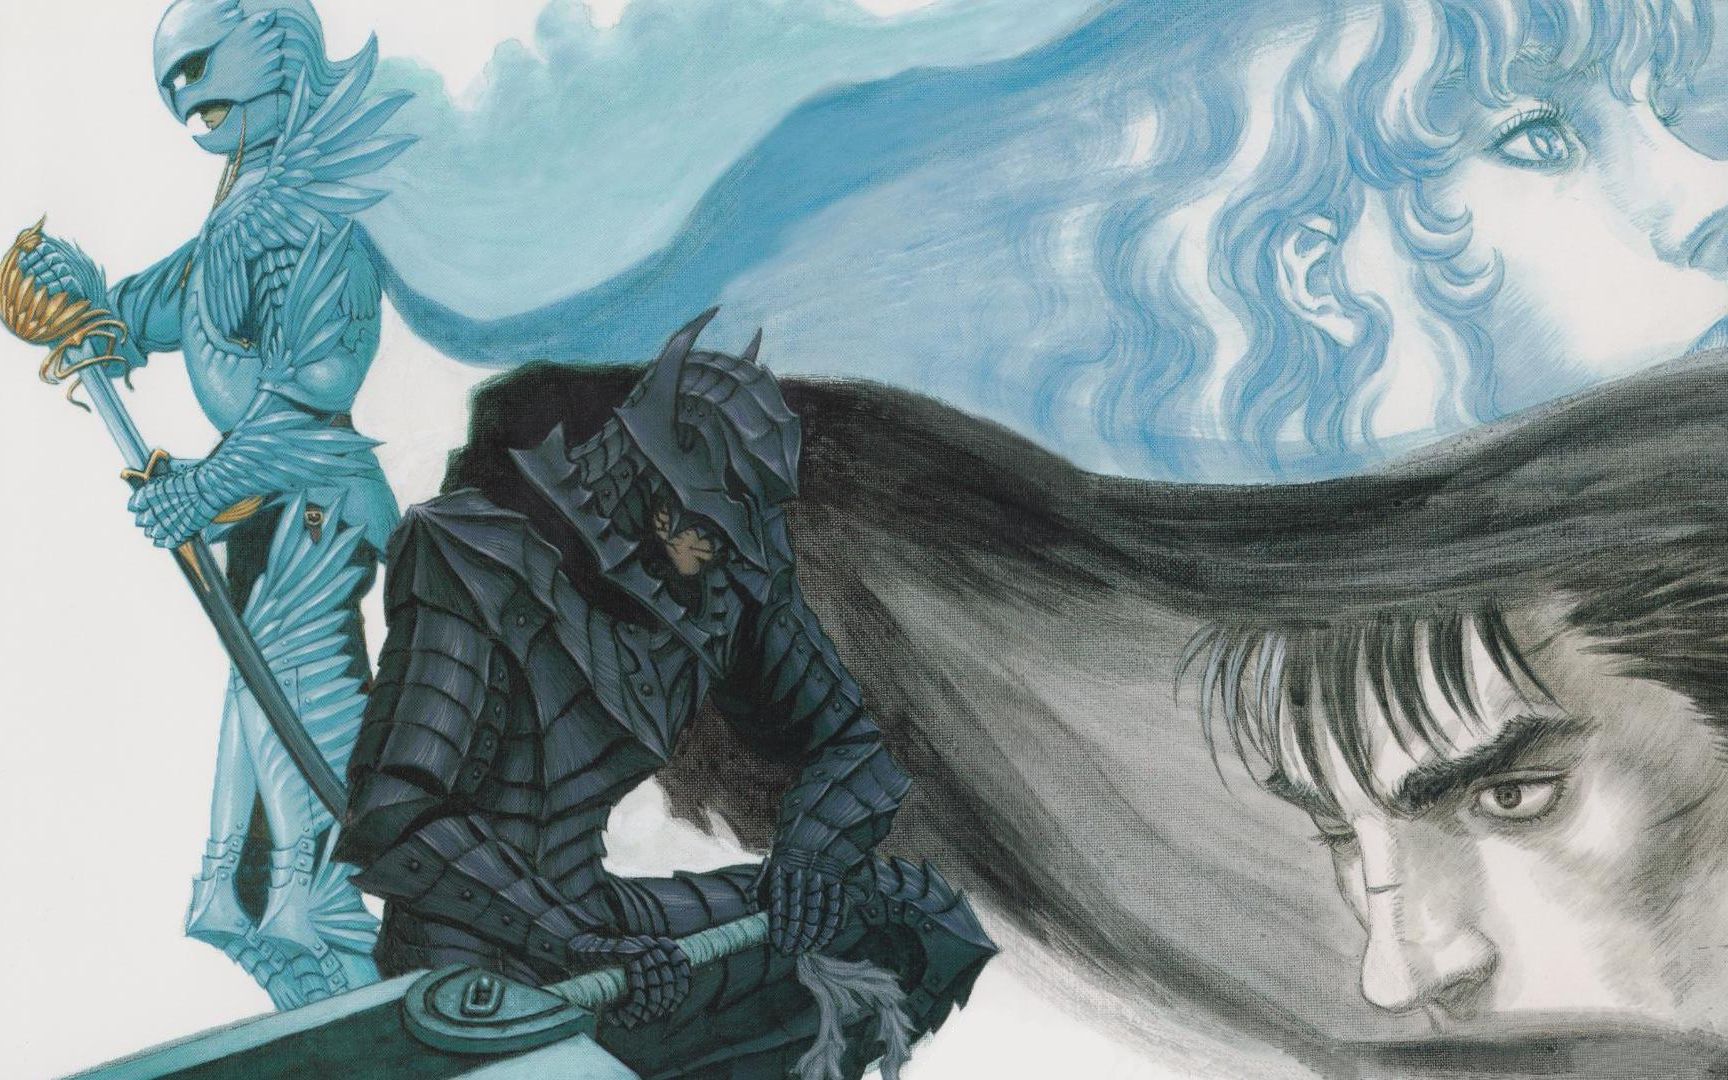 「剑风传奇」图集 真正的黑色剑士——格斯 - 哔哩哔哩